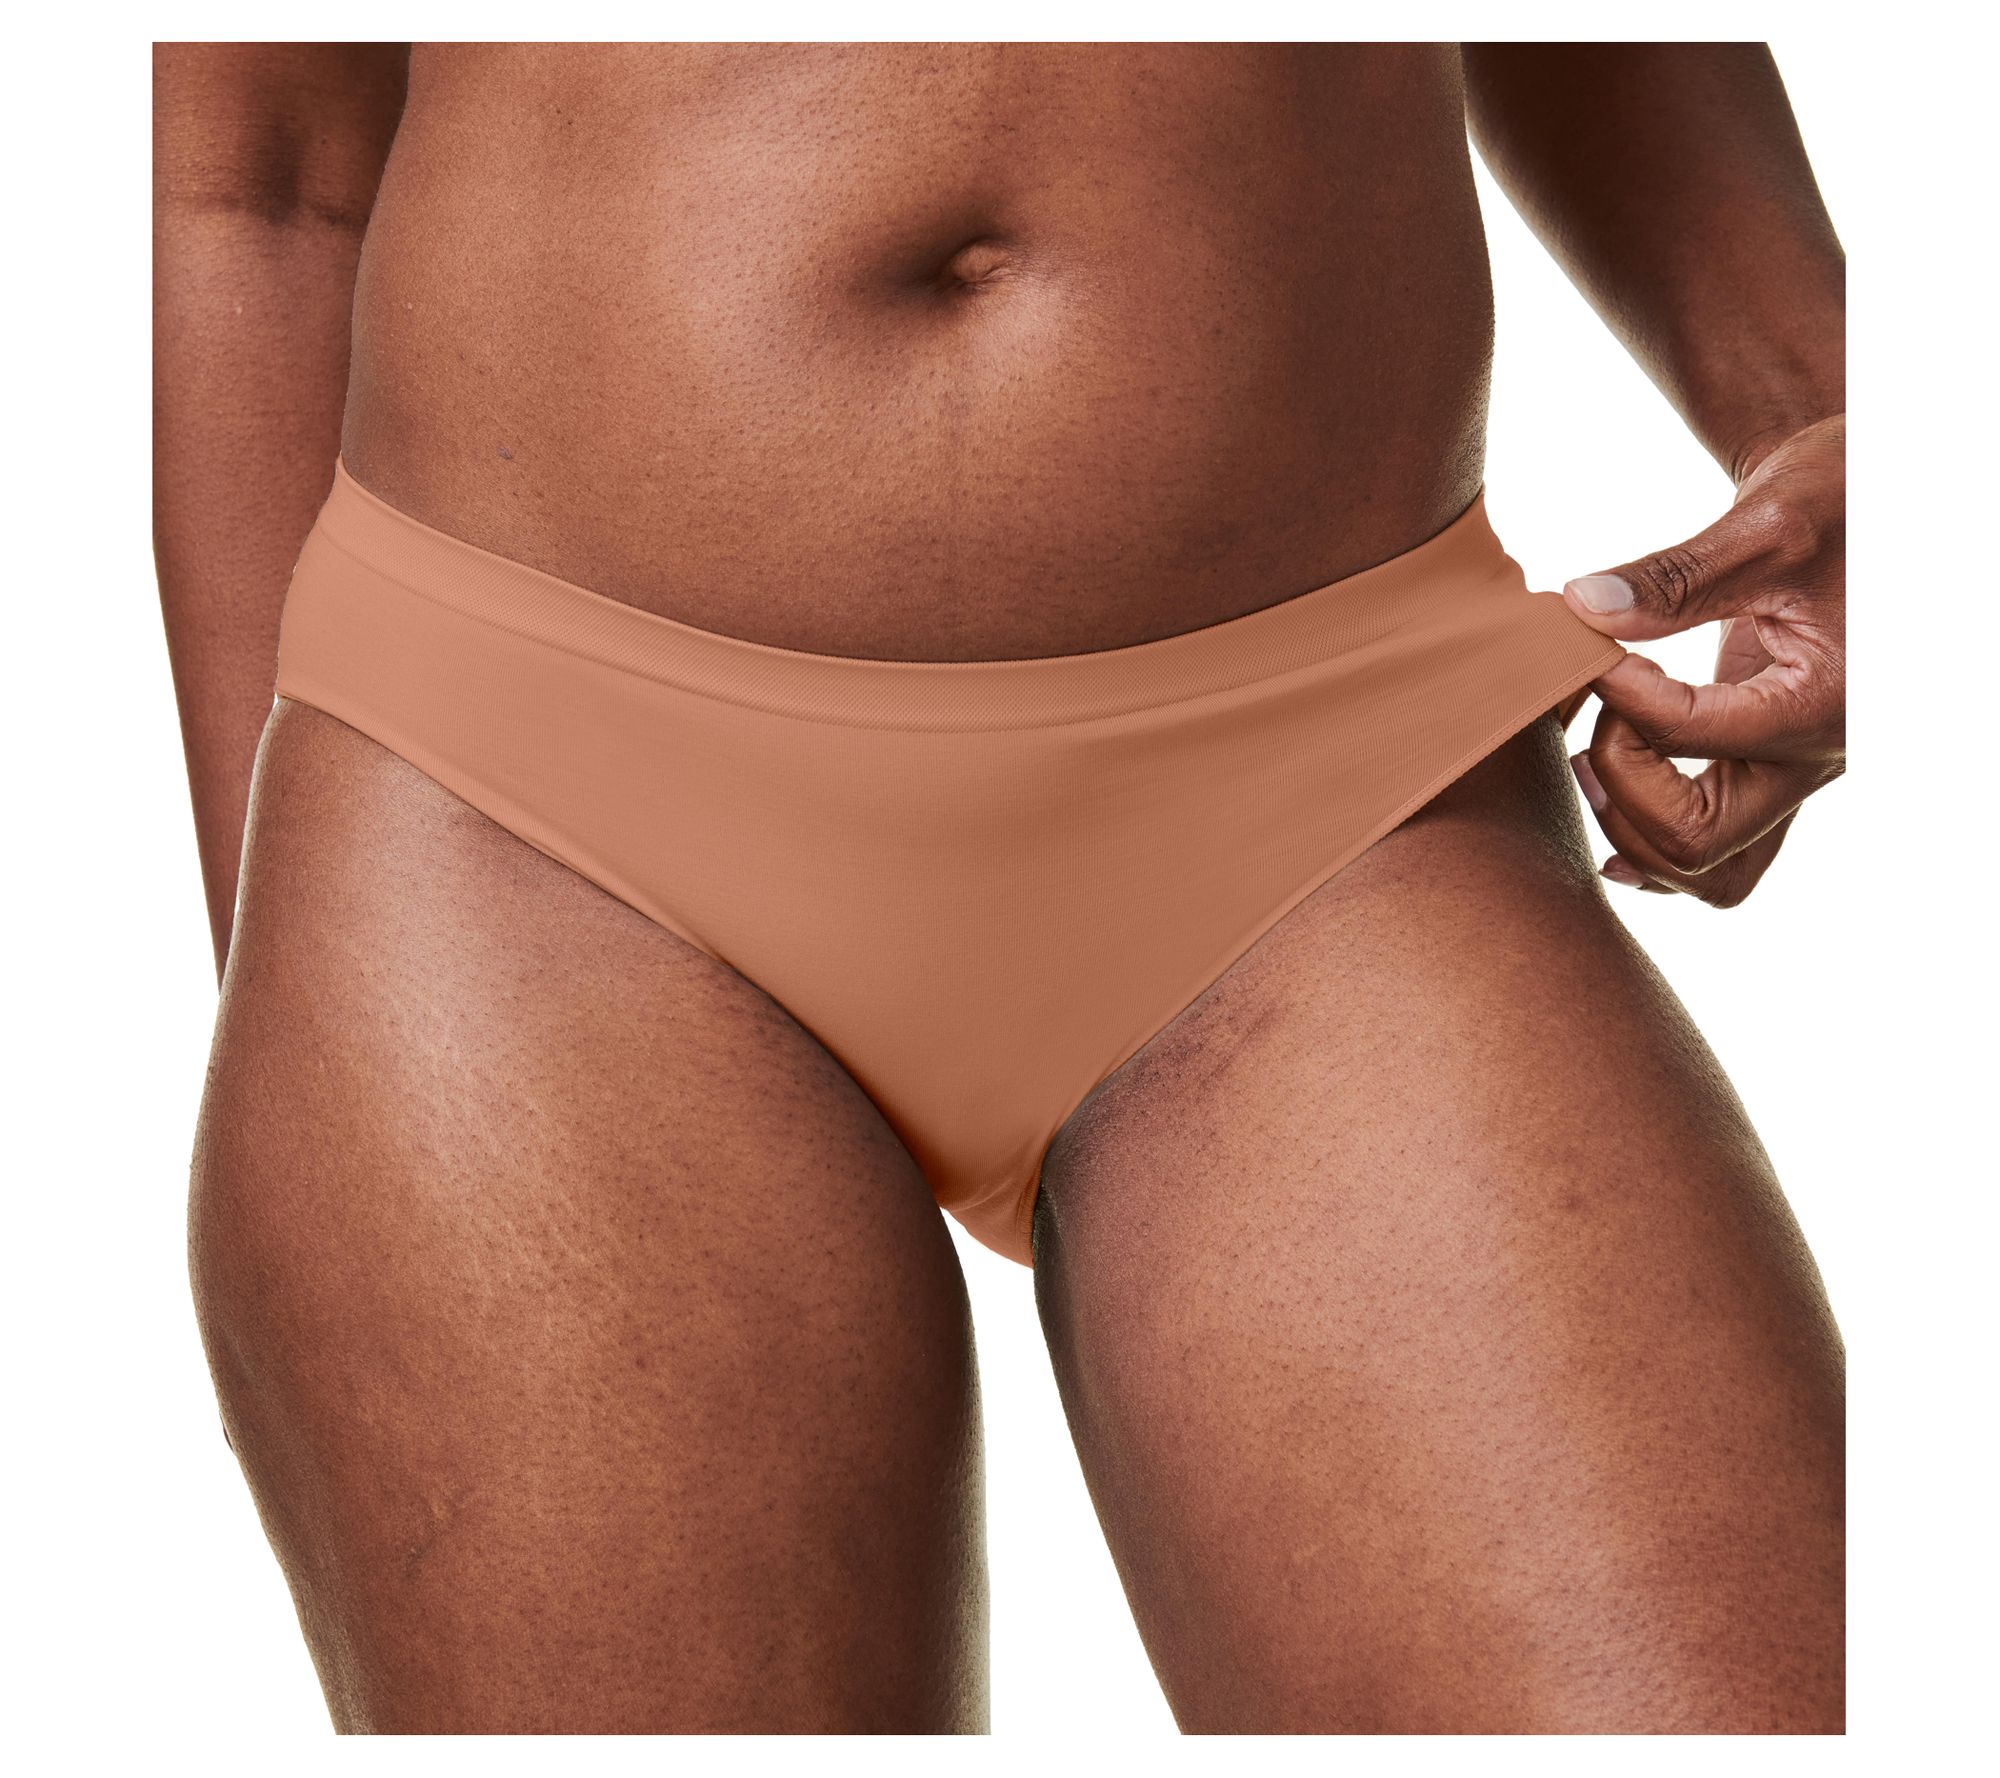 Bravado Underwear added a new photo. - Bravado Underwear